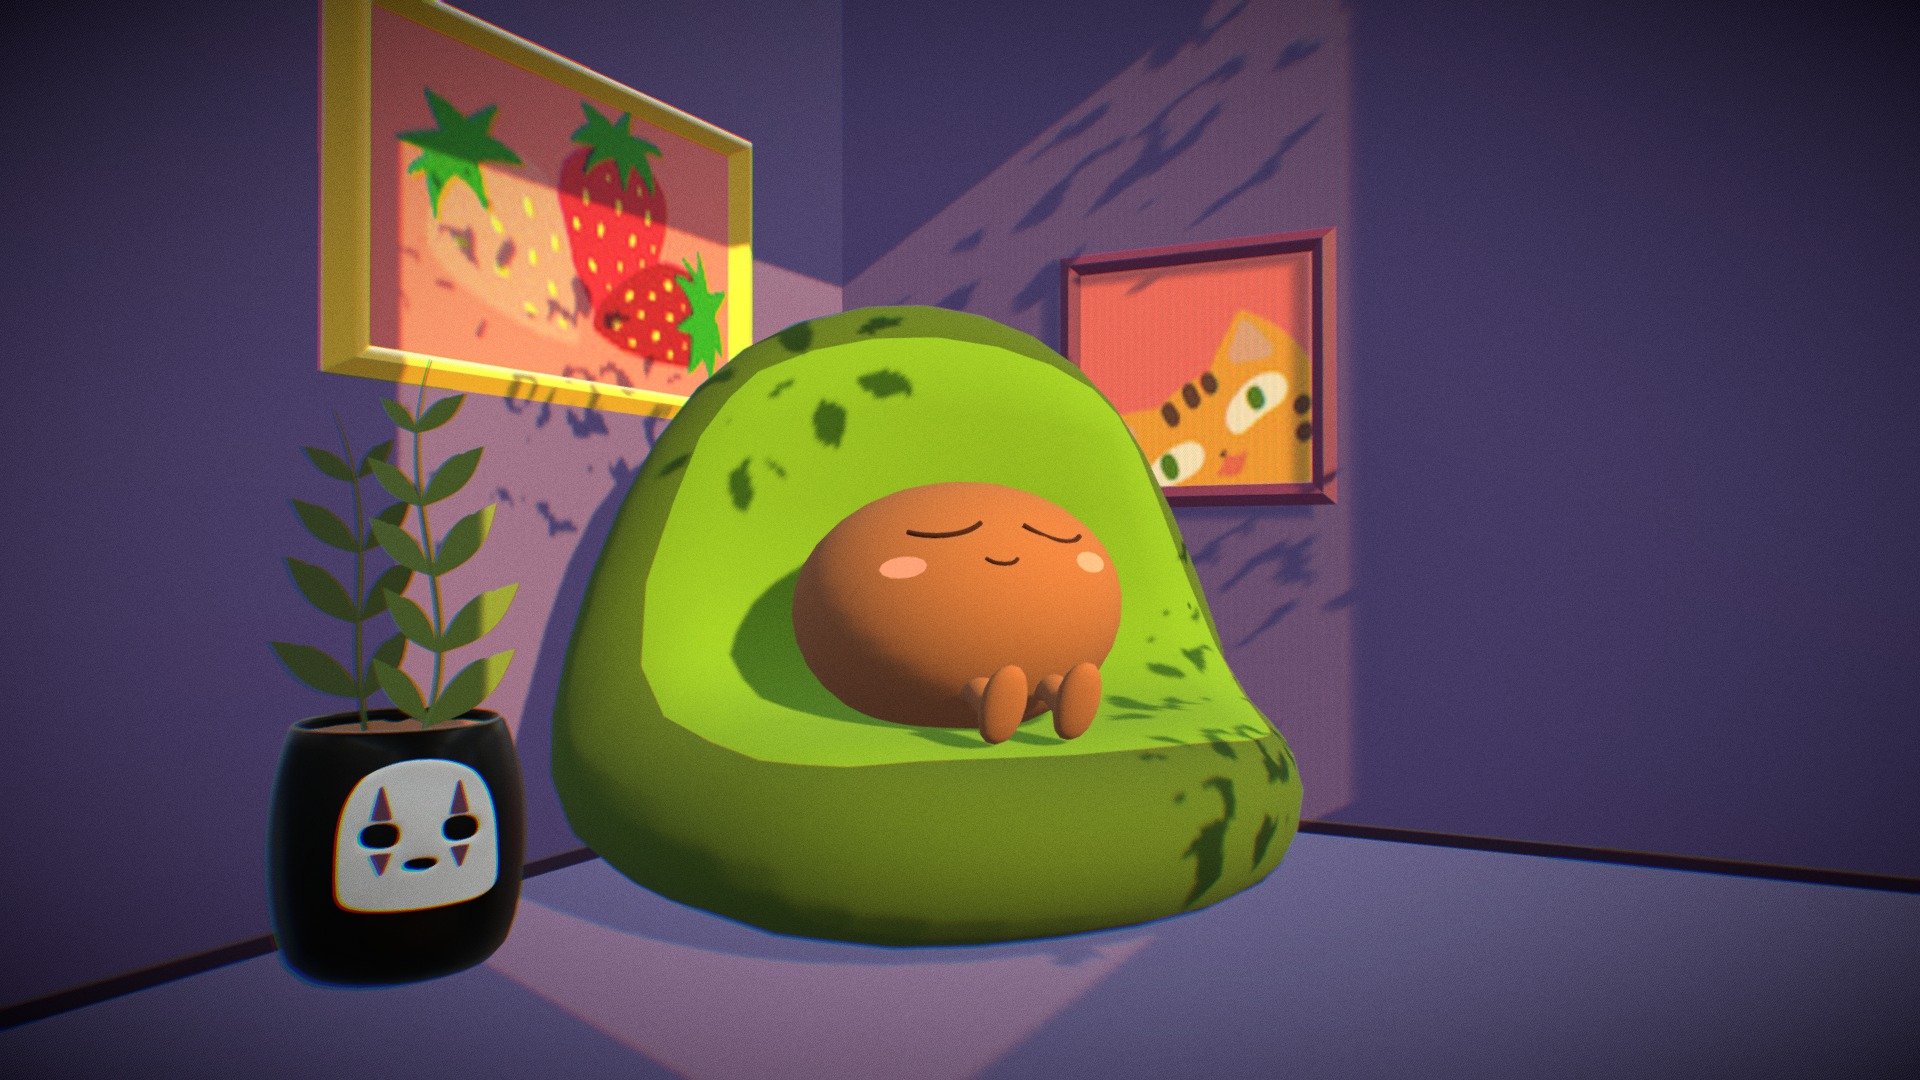 Just a cozy avocado - Cozy avocado - Download Free 3D model by Yakusokusen 3d model